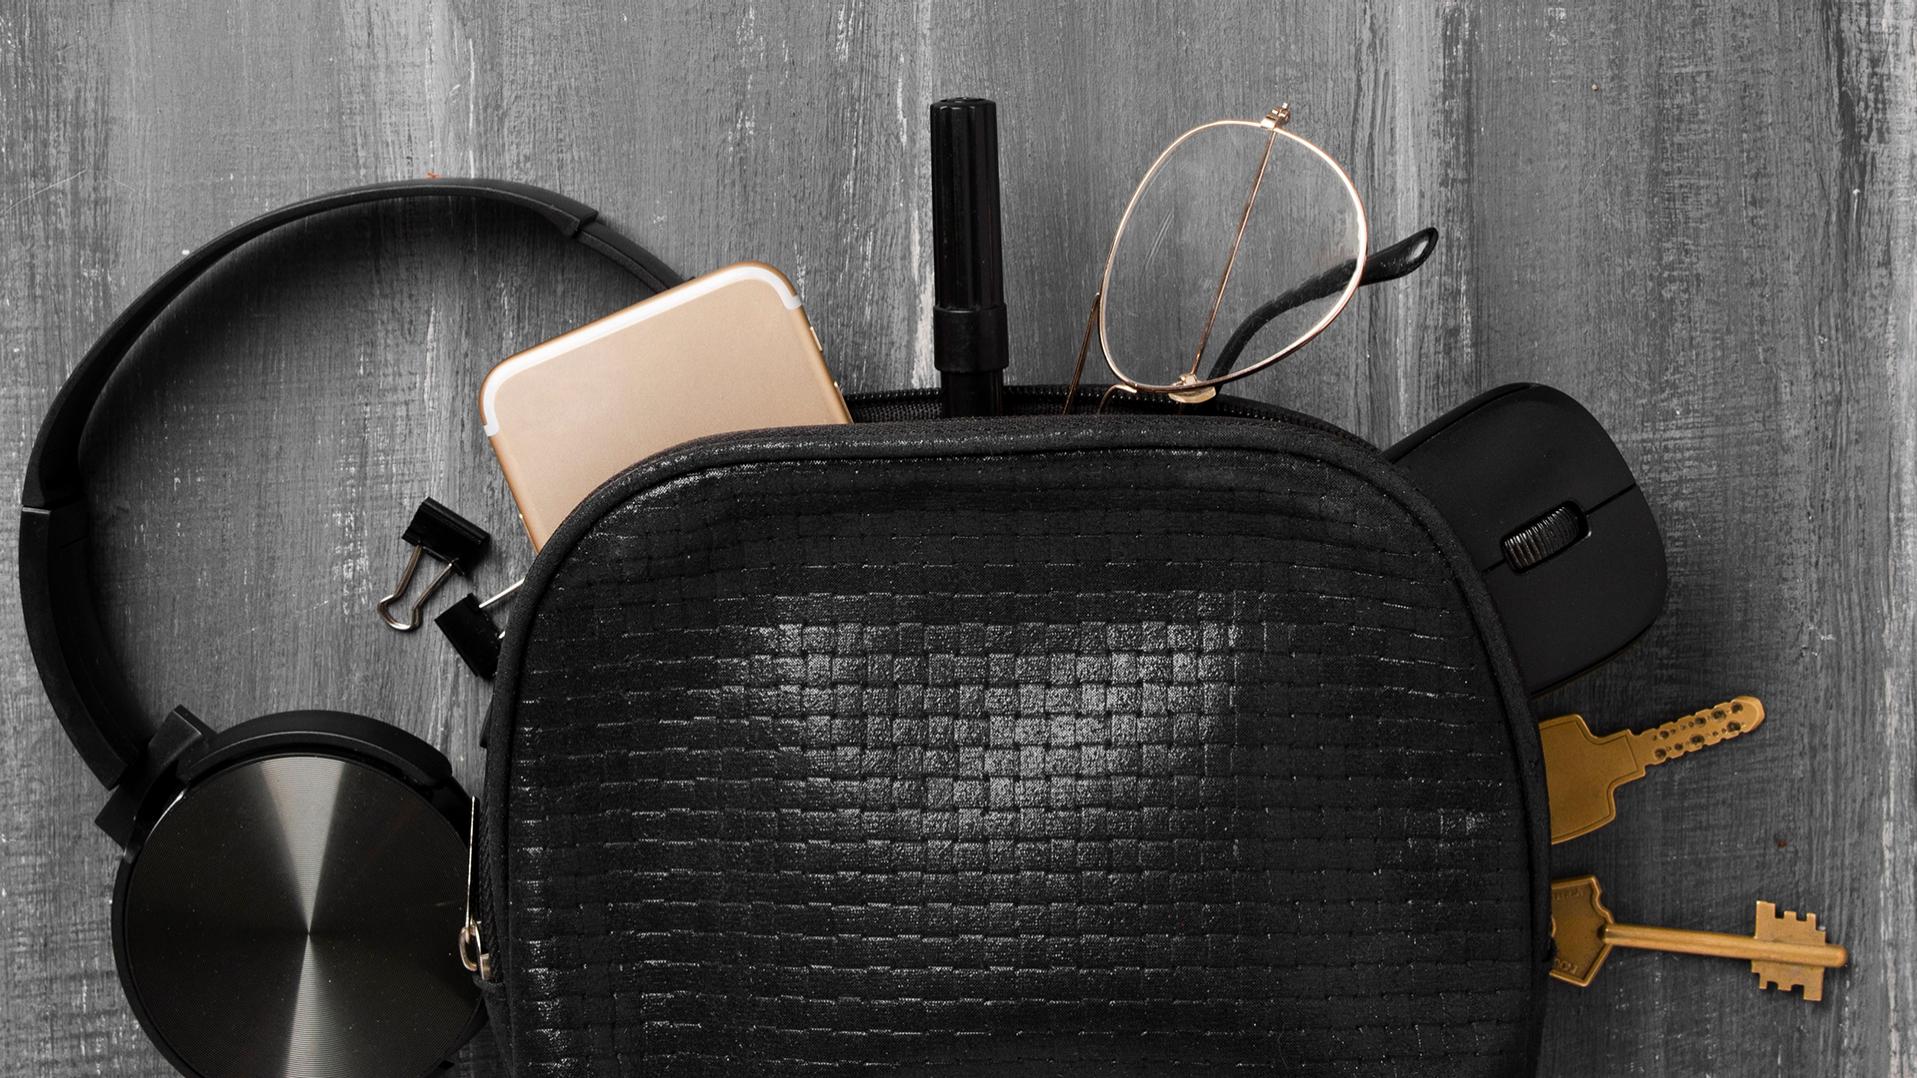 En liten svart väska där hörlurar, mobiltelefon, nycklar, pappersklämmor, en penna, en datormus och glasögon med ZEISS-glas försedda med DuraVision-ytbehandling kikar fram och ligger till hälften på det grå golvet.